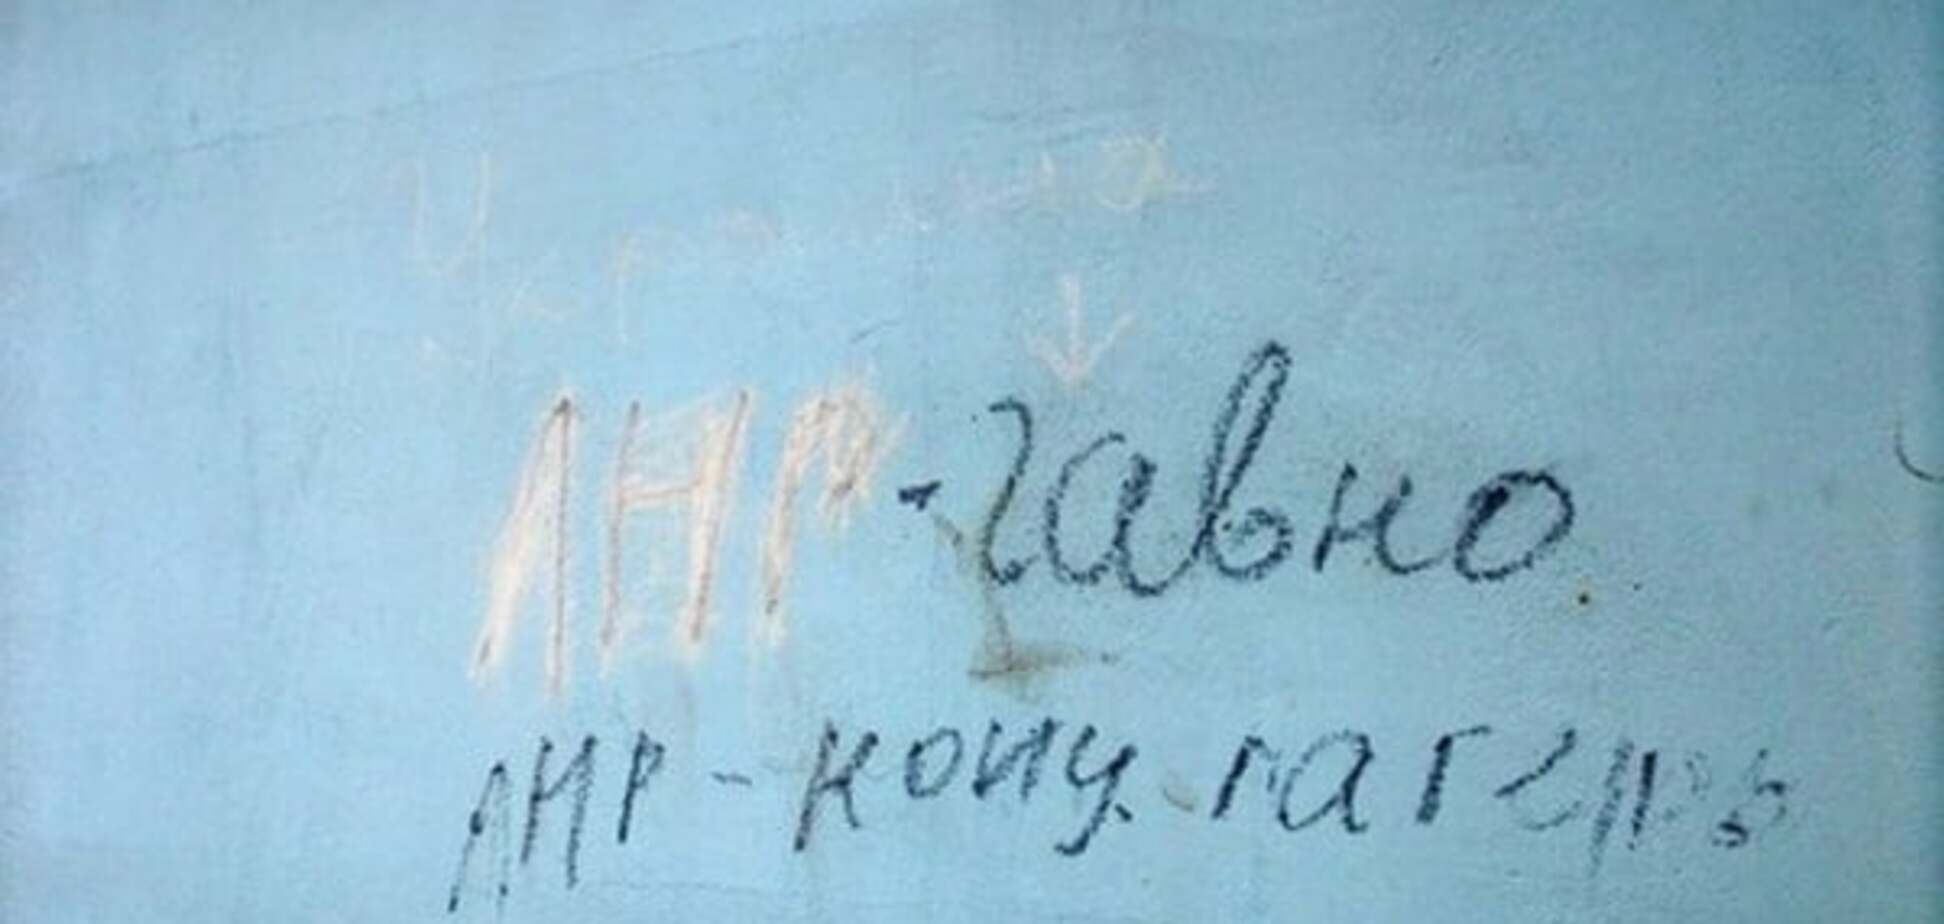 'ЛНР - гав*о!' Оккупированный Луганск покрылся патриотичными граффити: фоторепортаж